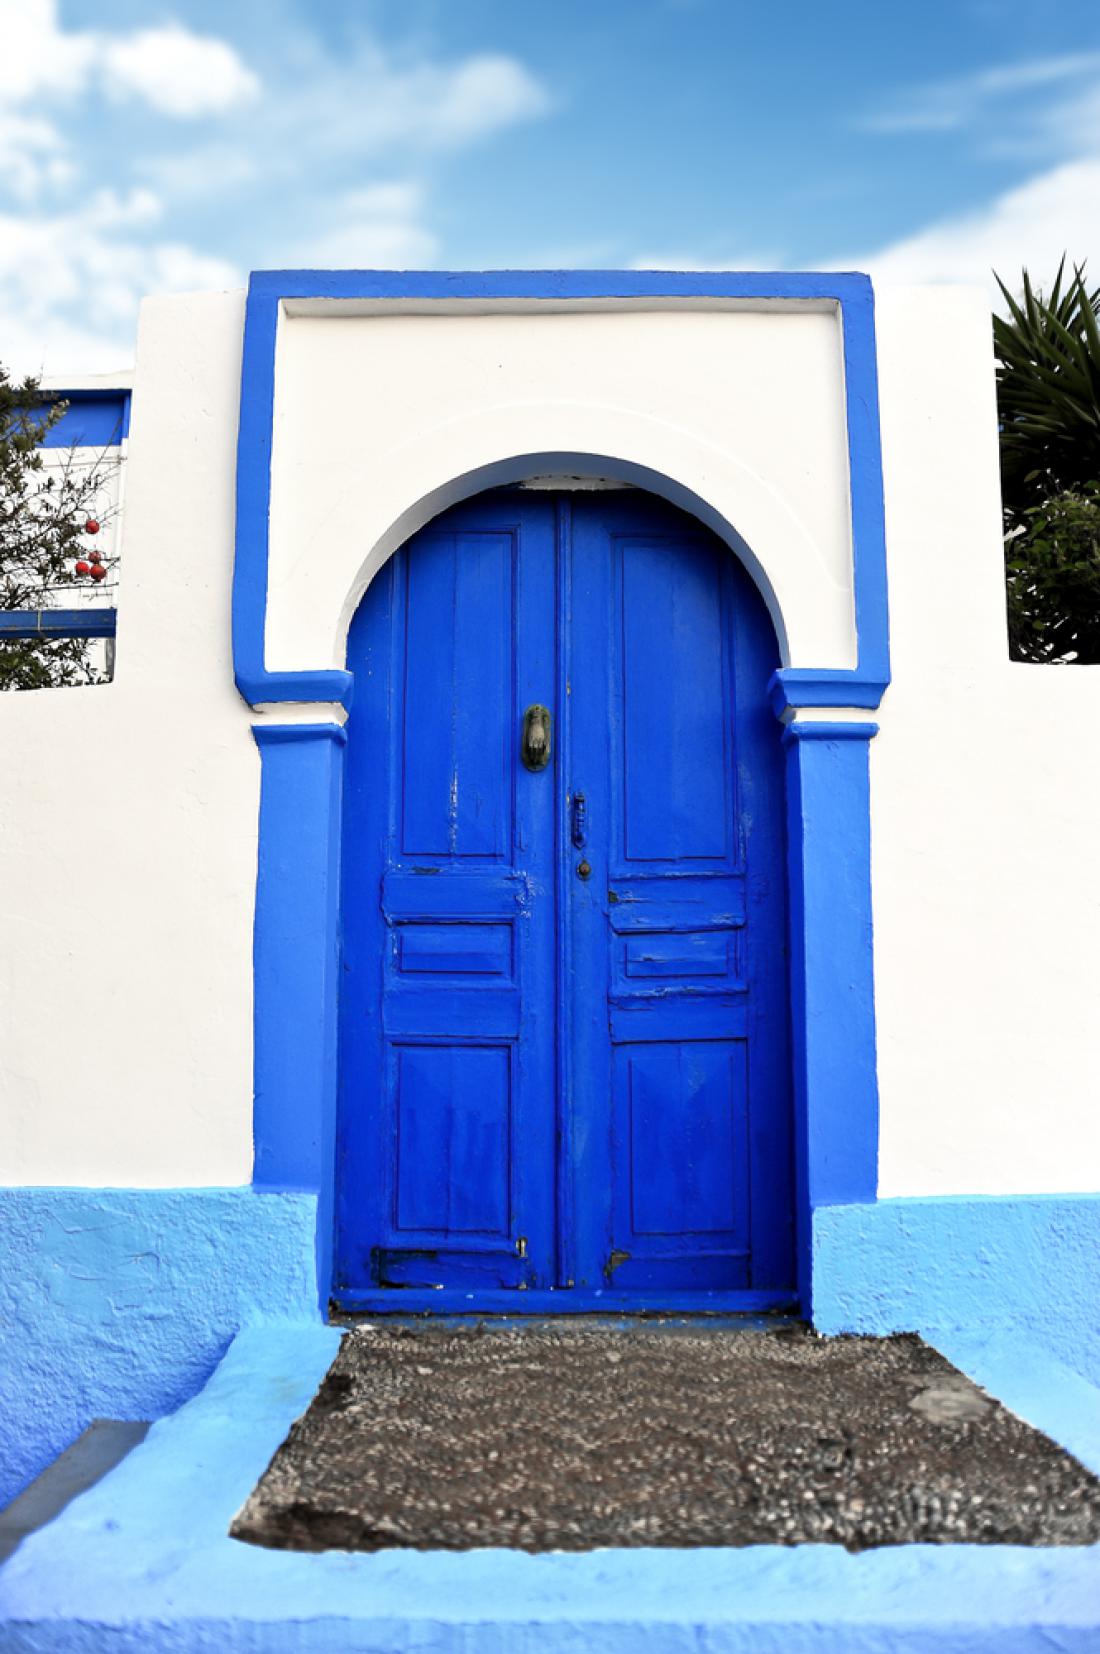 Tudi v vasicah se vam bo spočil pogled, vse je namreč v značilni grški belo-modri kombinaciji. Foto: Antlio/Shutterstock